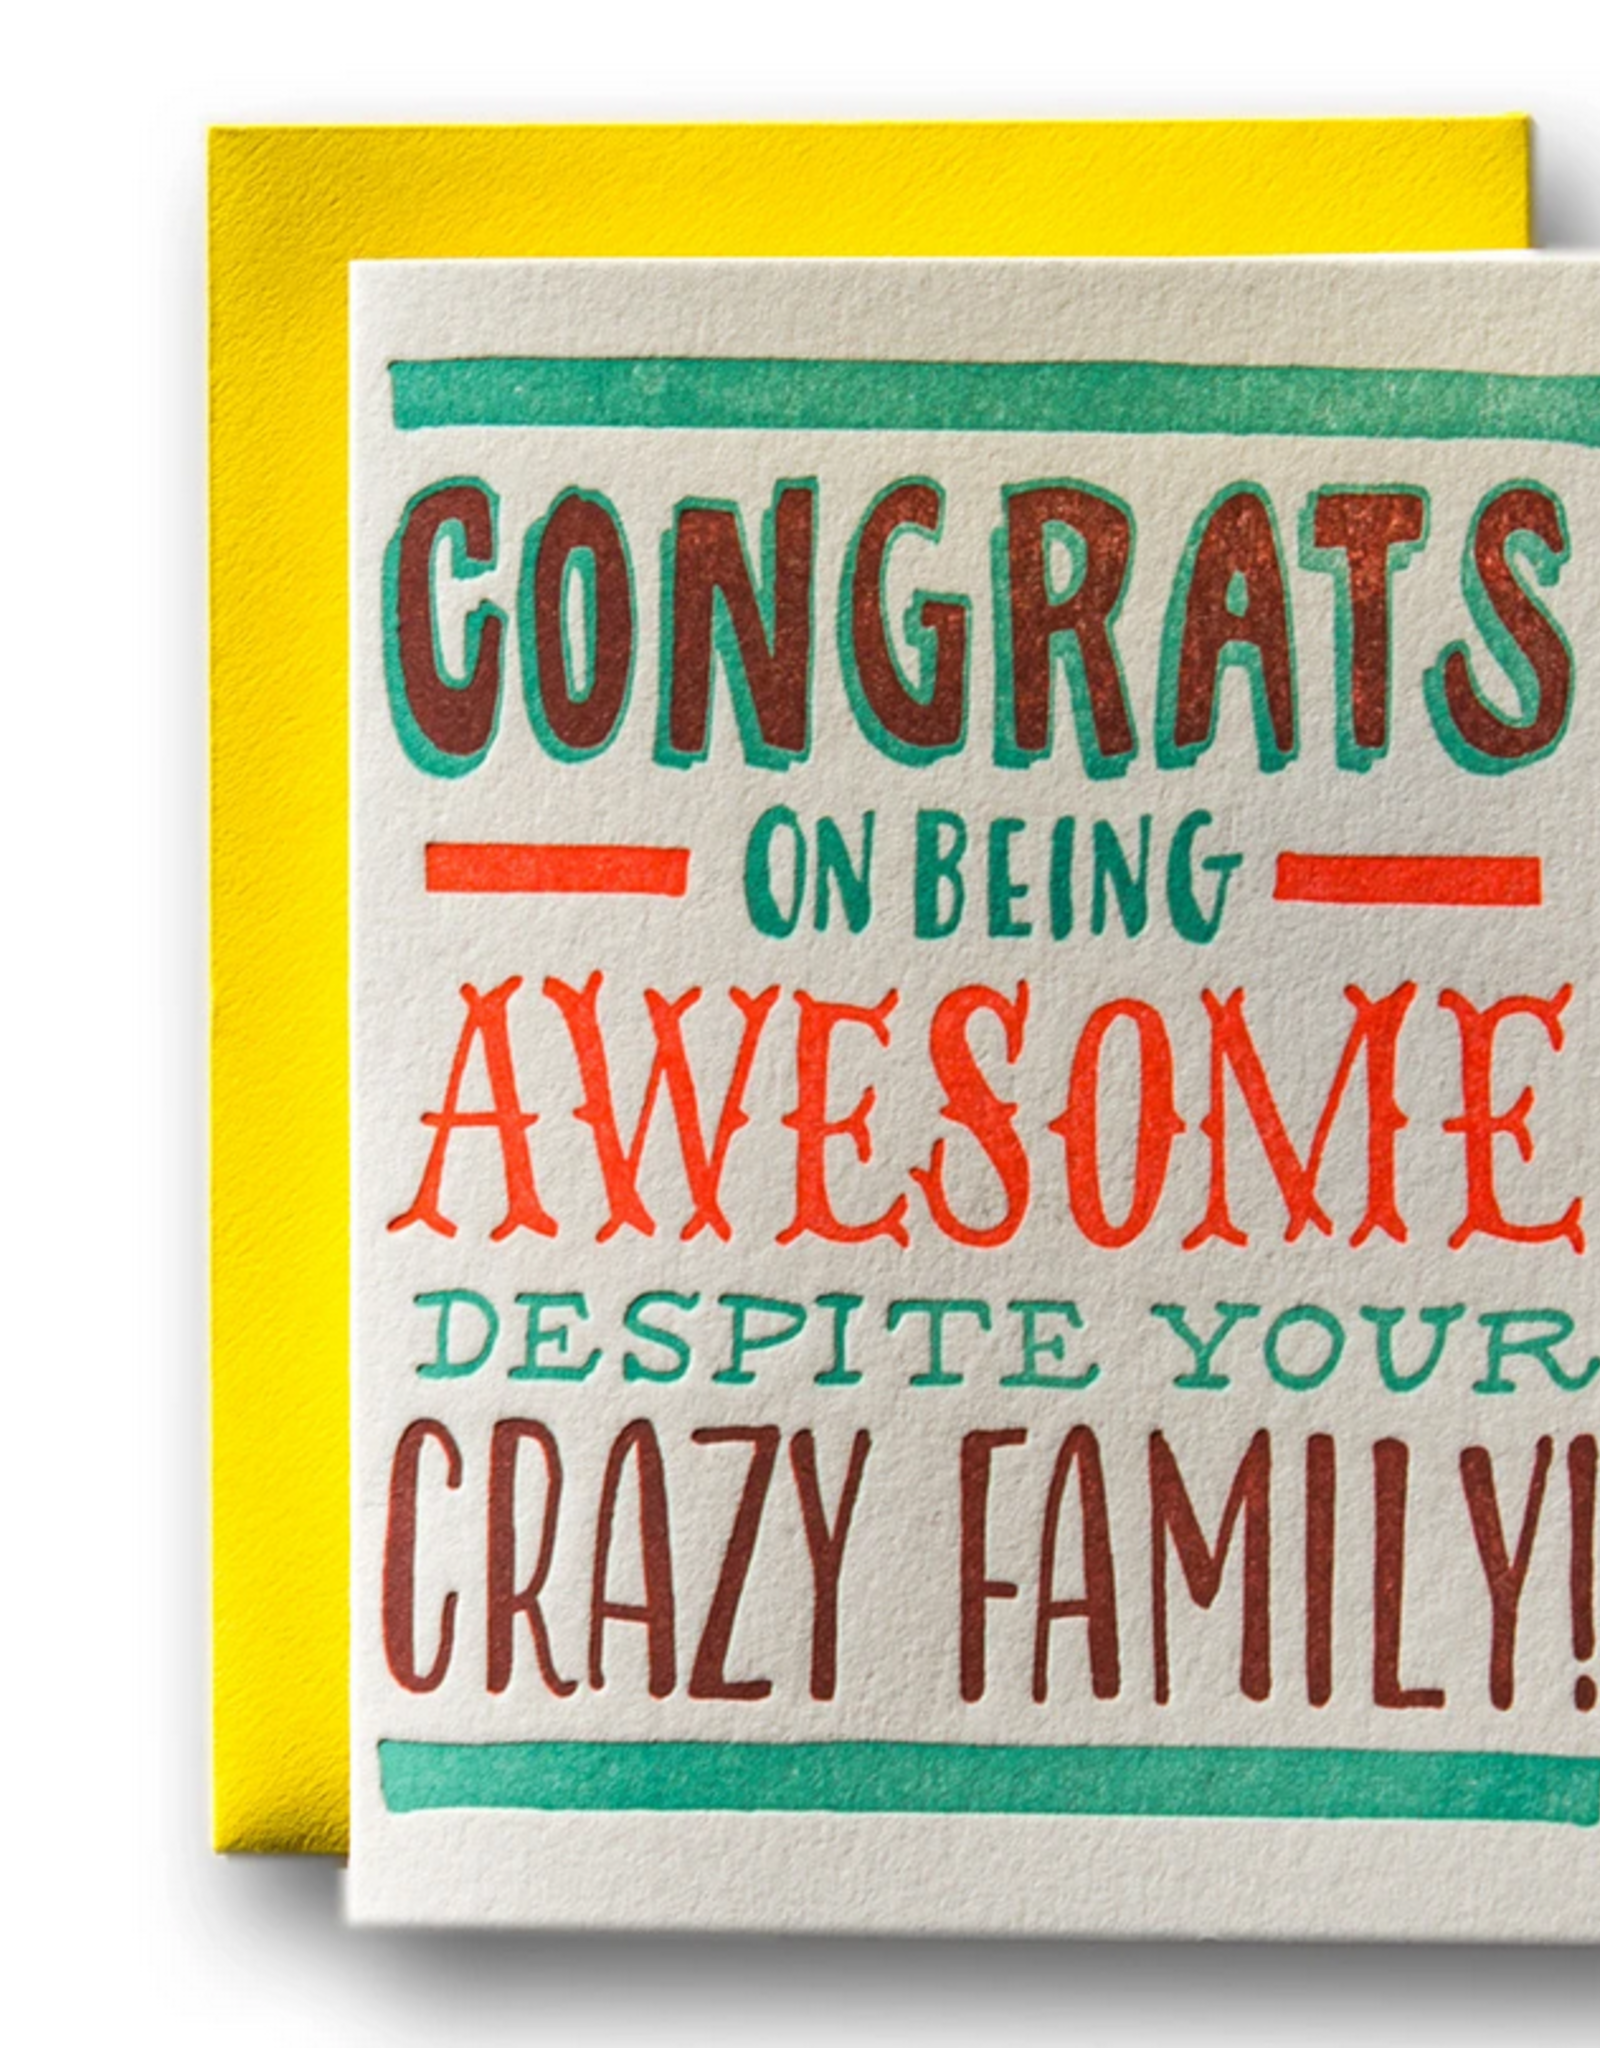 Awesome Despite Crazy Family Card